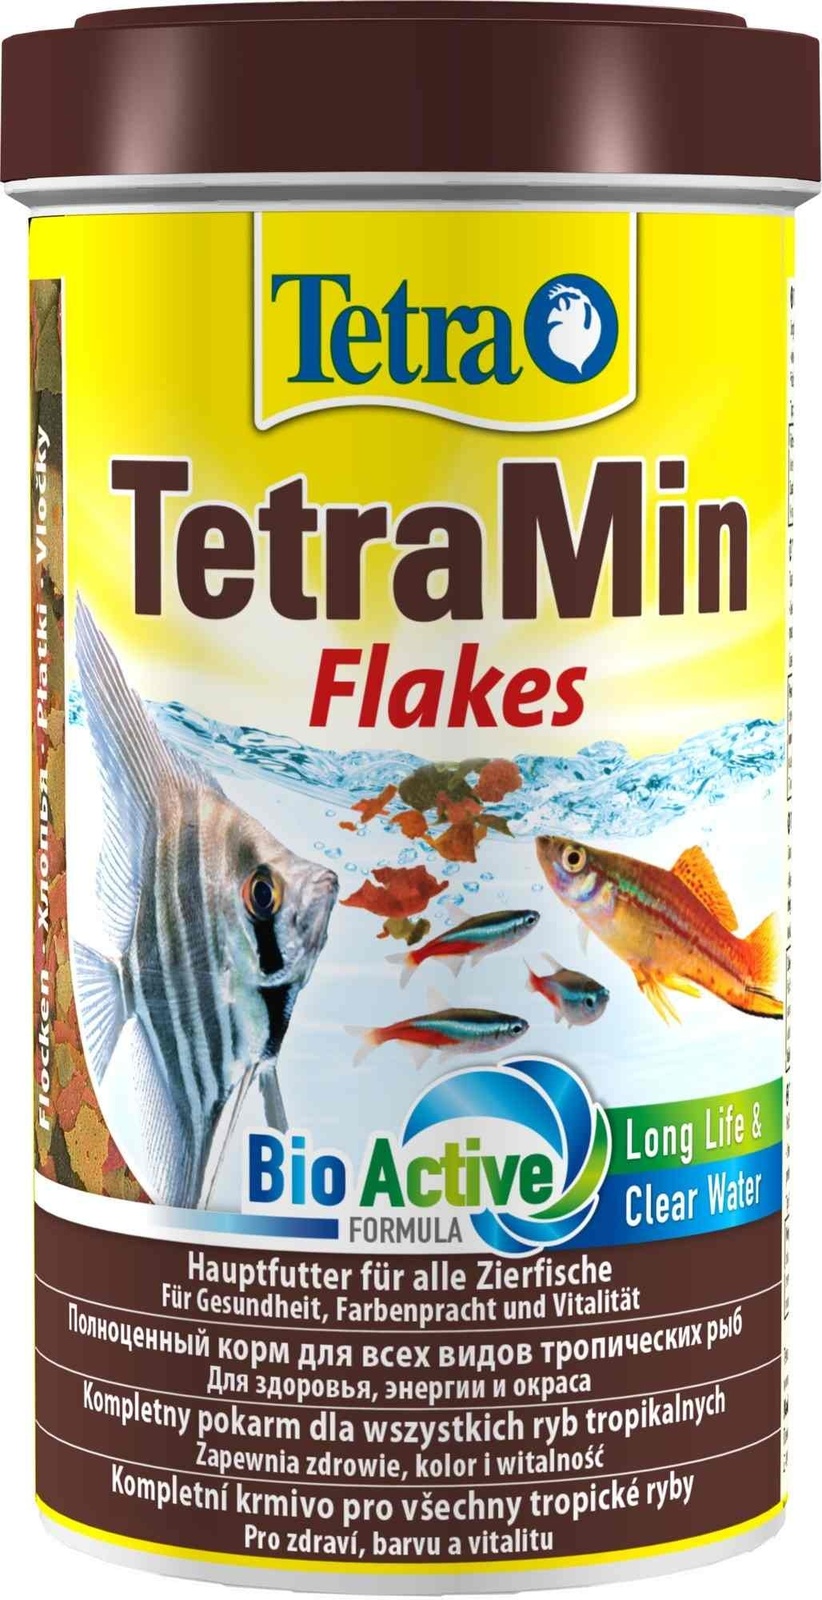 Tetra (корма) Tetra (корма) корм для всех видов тропических рыб. хлопья TetraMin Flakes (100 г) tetra корма tetra корма для золотых и холодноводных рыб хлопья 52 г